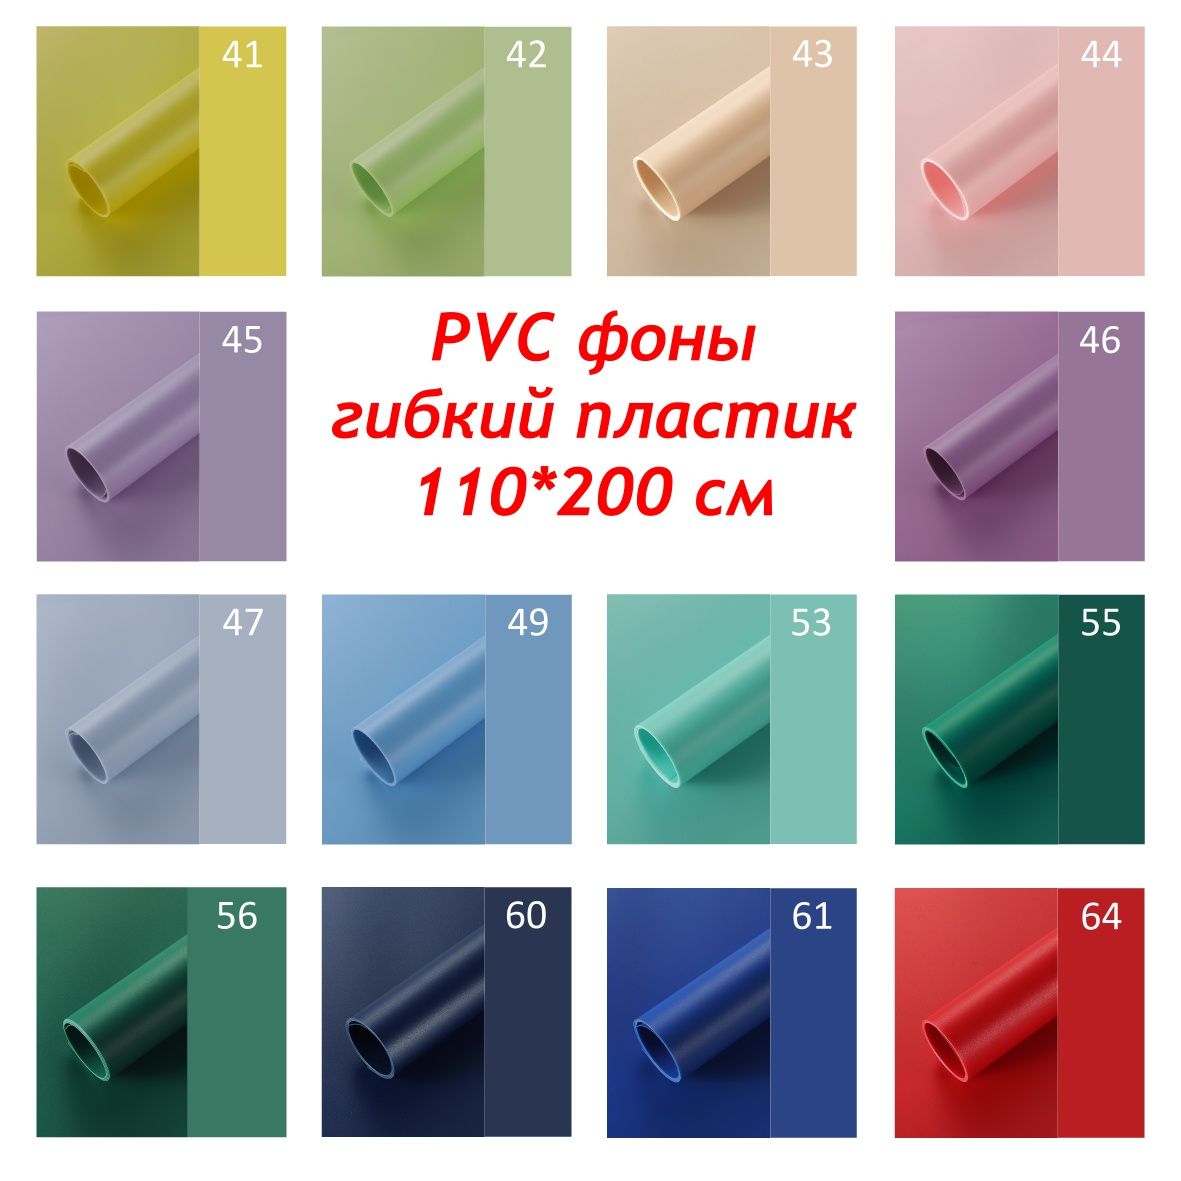 Фон 110*200 см PVC гибкий пластик для предметной съемки, одежды, игруш